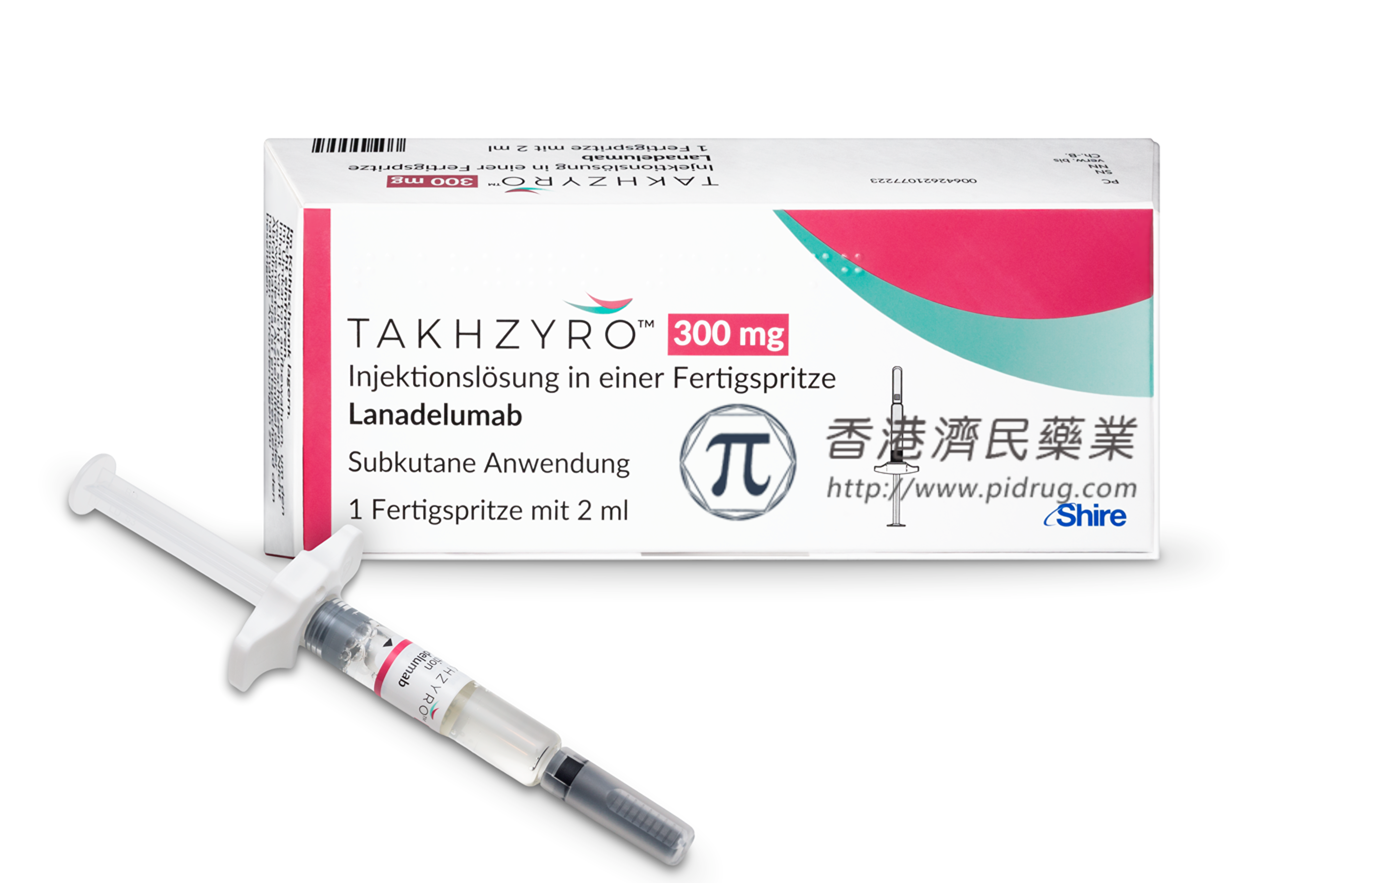 武田Takhzyro(lanadelumab)在日本被批准用于预防遗传性血管性水肿(HAE)的急性发作